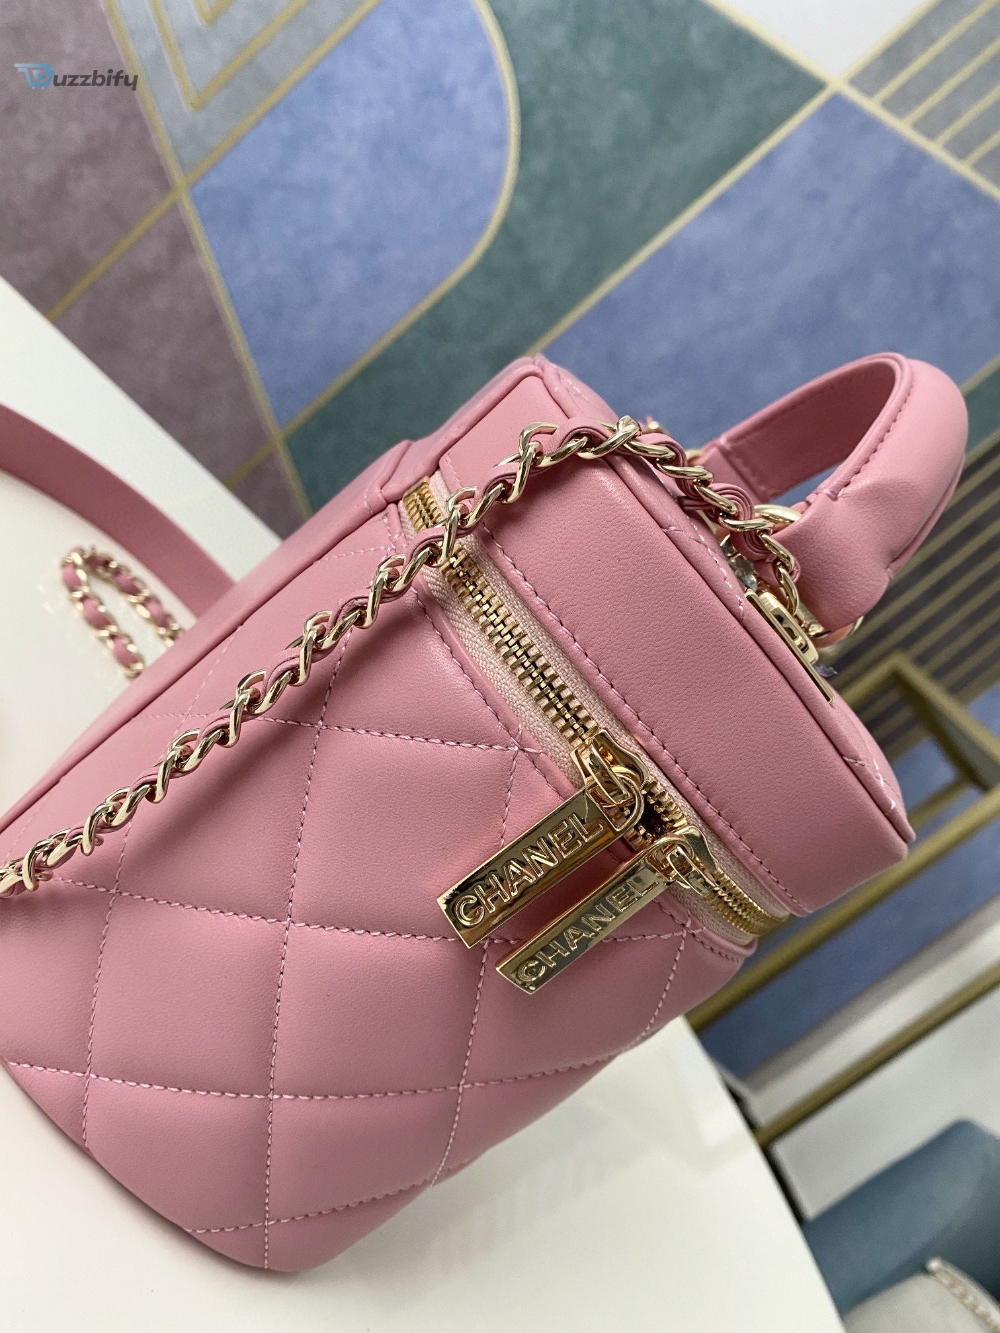 Chanel Vanity Case Gold Hardware Pink For Women, Women’s Handbags, Shoulder Bags 9.4in/24cm